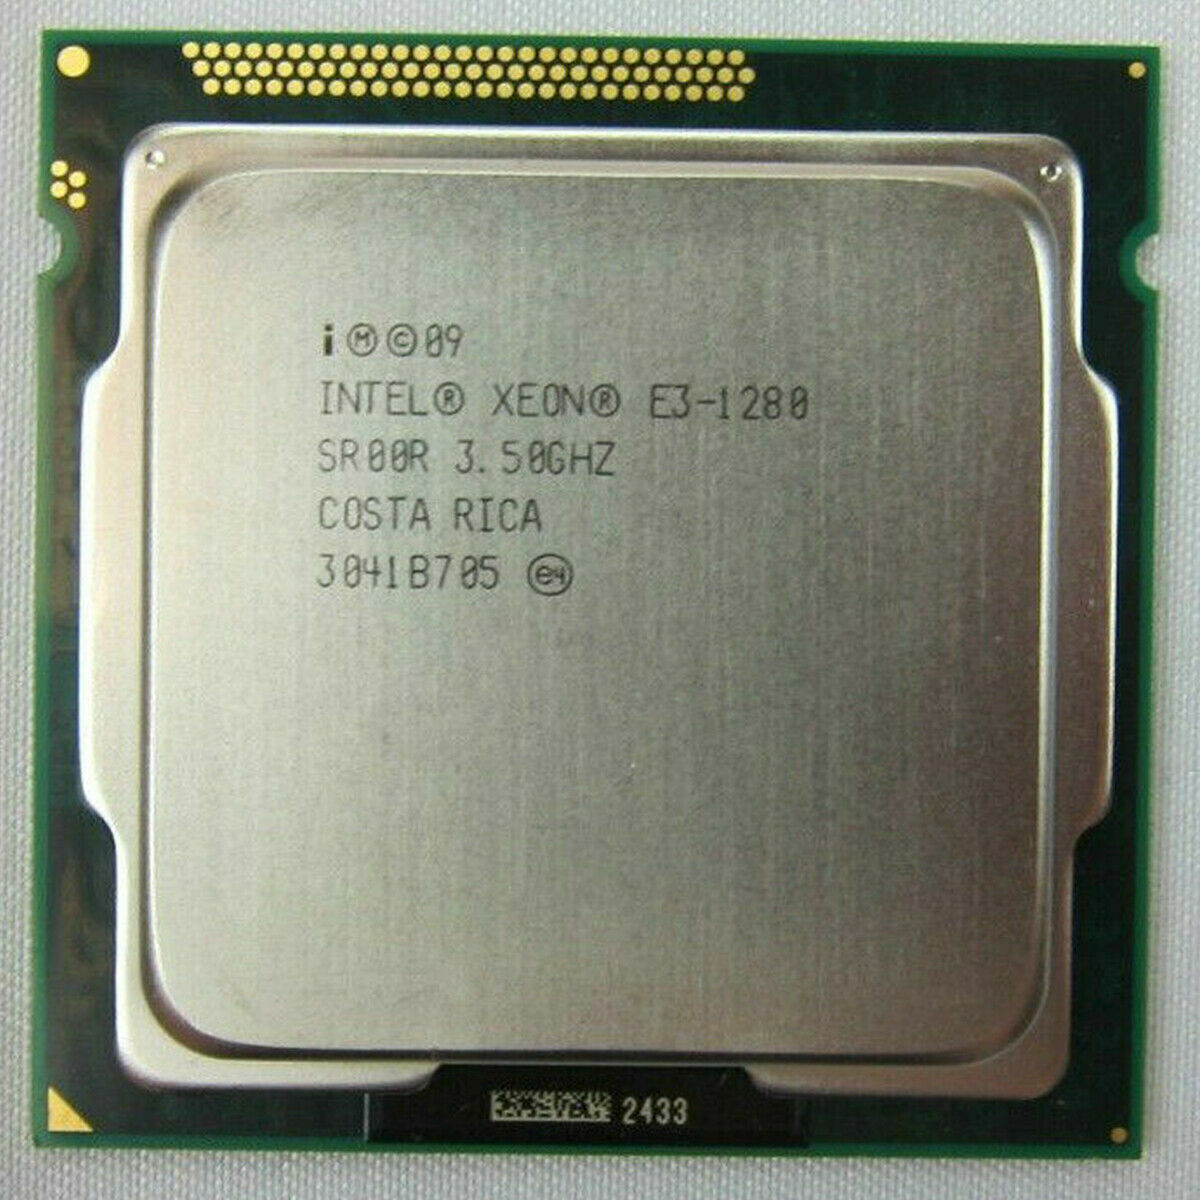 Intel Xeon E3-1280 E3-1280 V2 E3-1220 E3-1230 E3-1240 LGA1155 CPU Processor